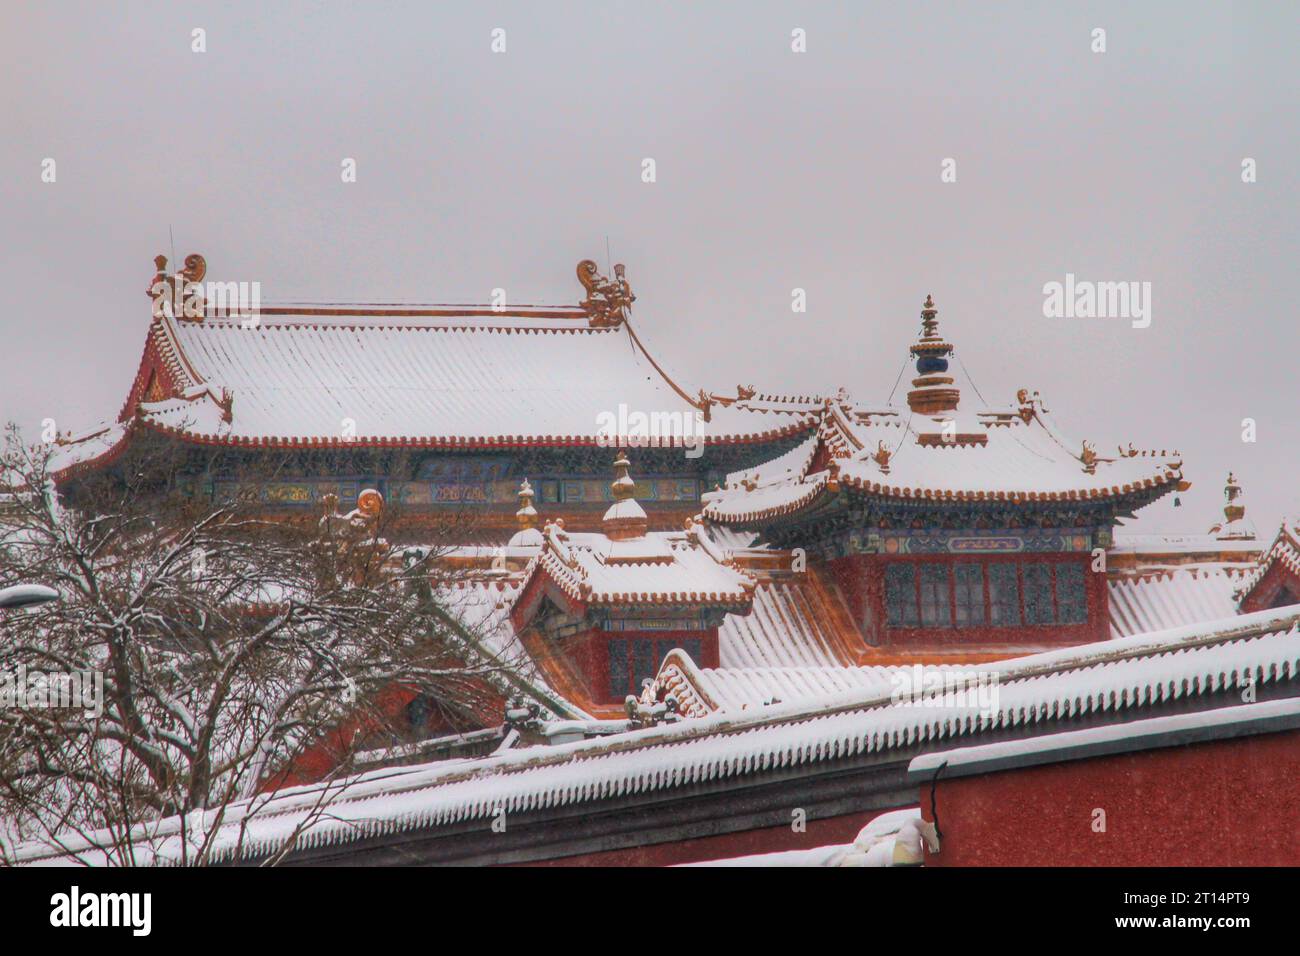 Erkunden Sie das bezaubernde Spektakel der vielfarbigen traditionellen Häuser, eingebettet in ein winterliches Wunderland unter einer unberührten chinesischen Schneelandschaft Stockfoto